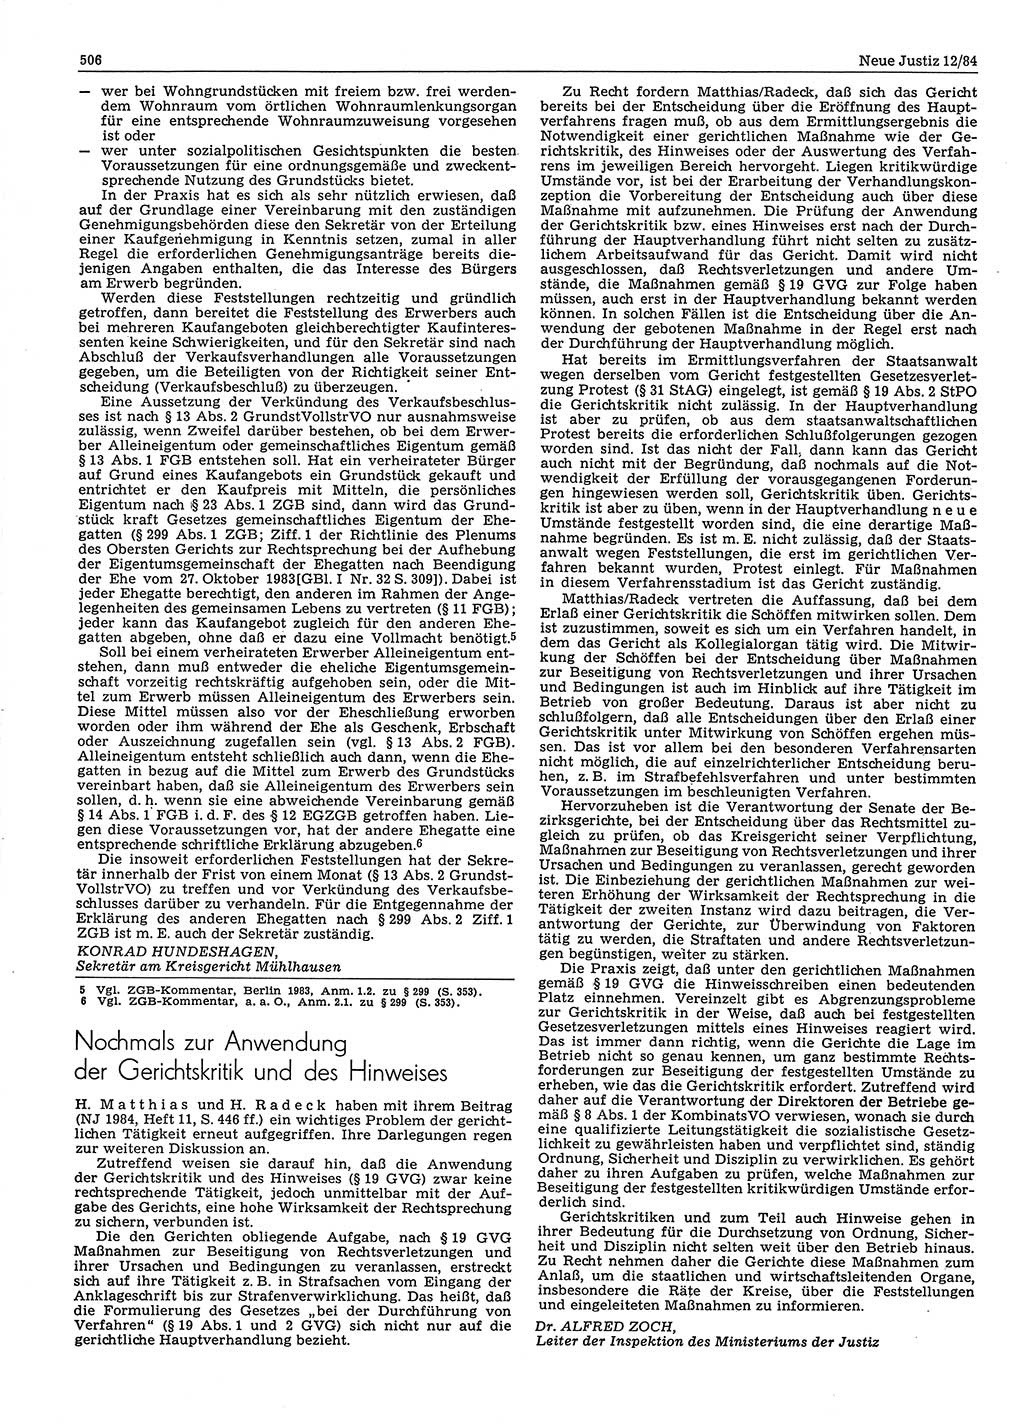 Neue Justiz (NJ), Zeitschrift für sozialistisches Recht und Gesetzlichkeit [Deutsche Demokratische Republik (DDR)], 38. Jahrgang 1984, Seite 506 (NJ DDR 1984, S. 506)